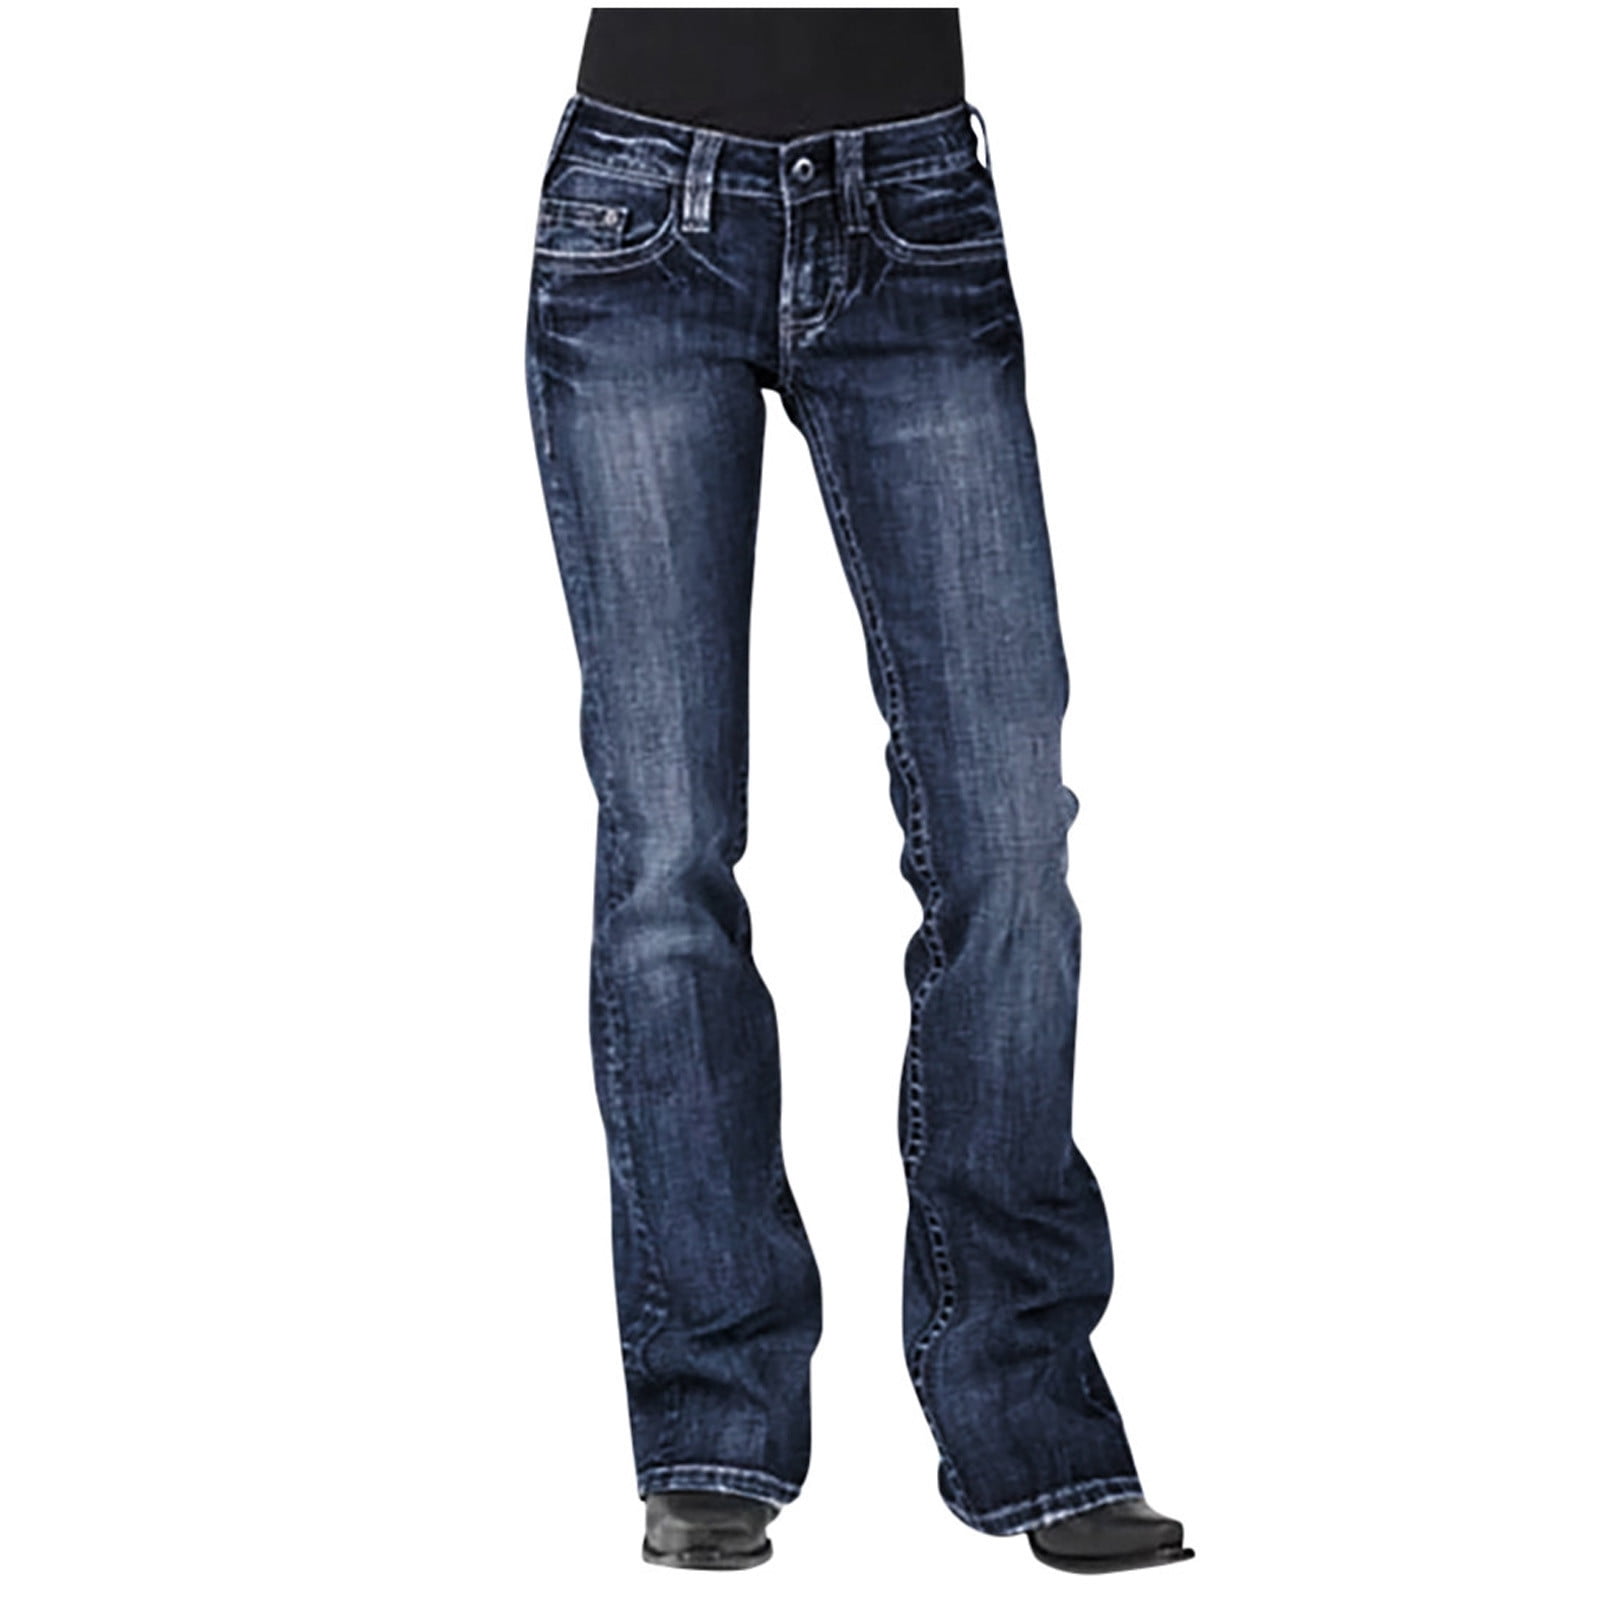 COBKK Jeans for Women Petite Full Length Pants Jeans Women Mid Waisted ...